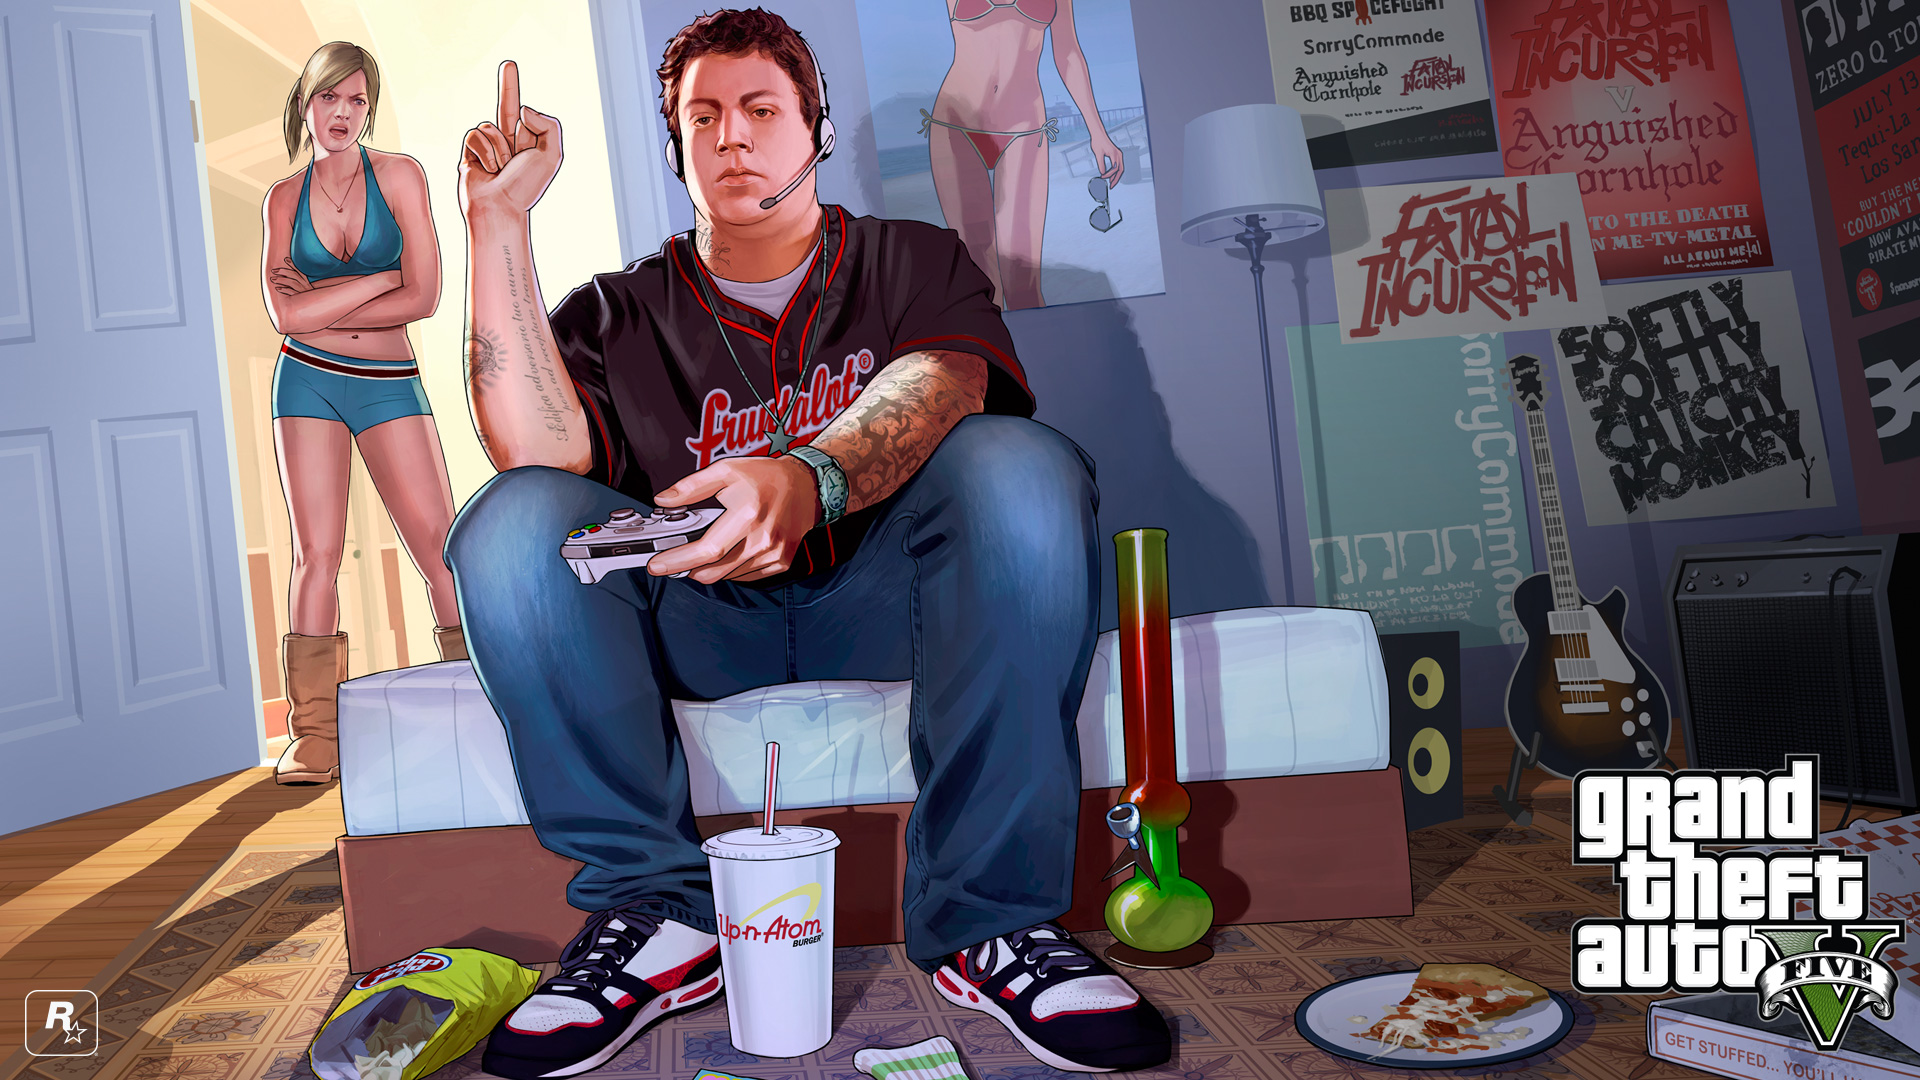 Fond ecran wallpaper Grand Theft Auto 5   JeuxVideofr